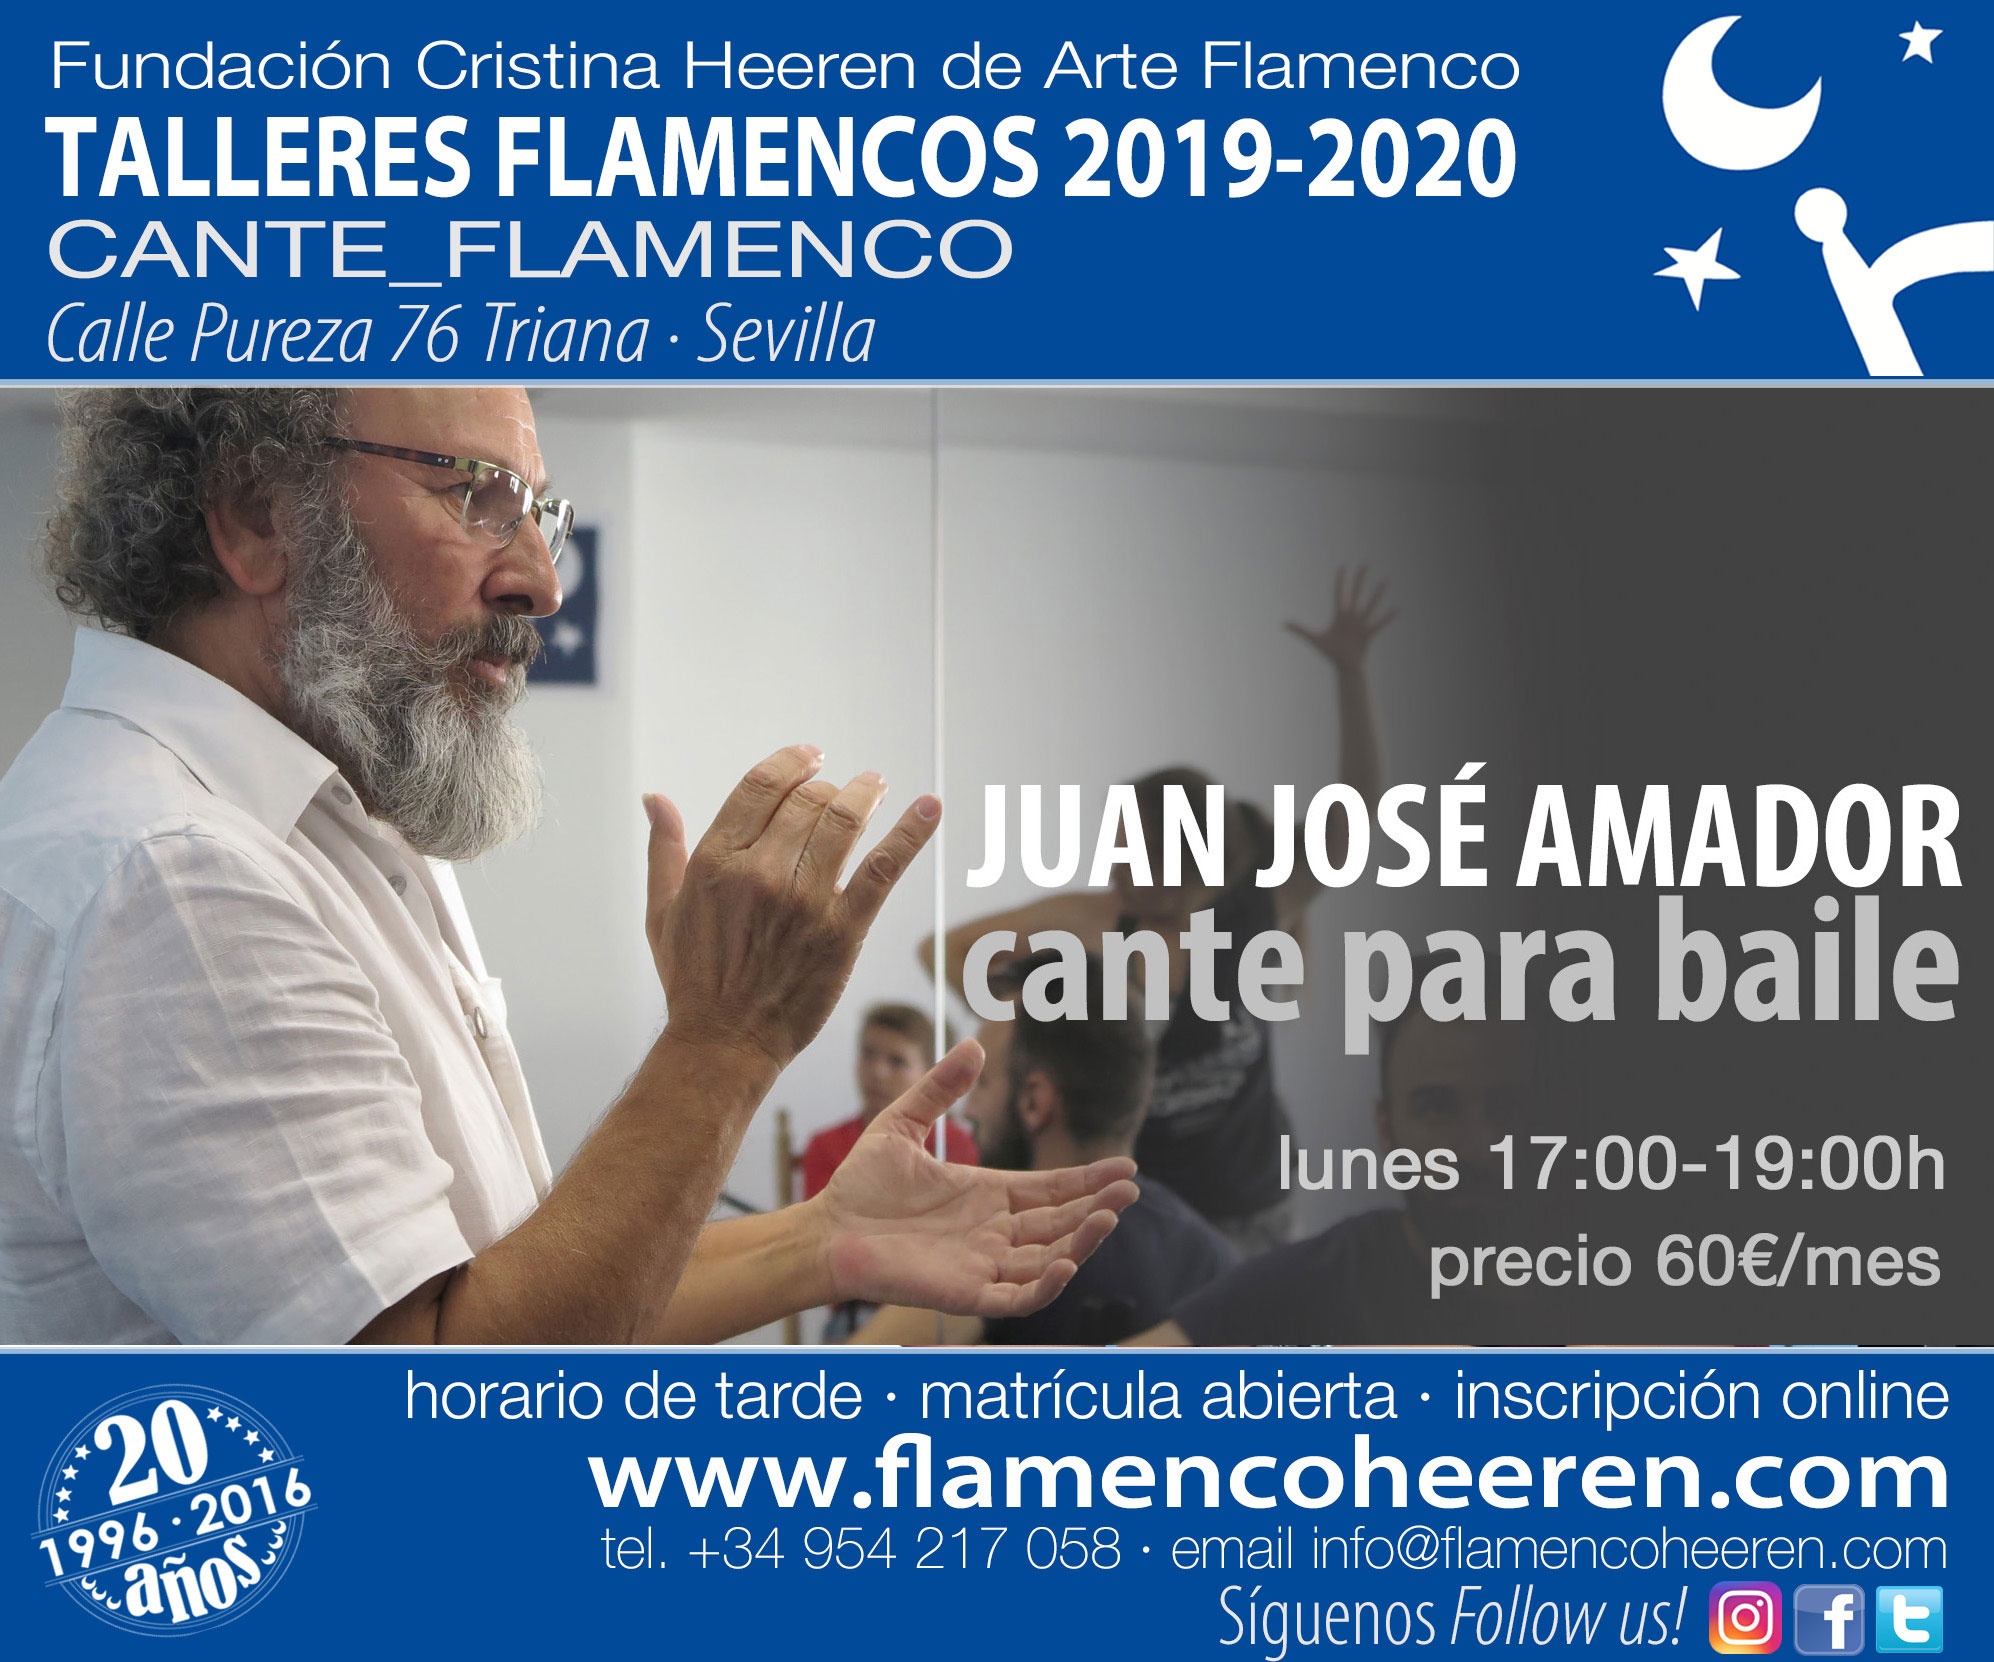 Juan José Amador, cante para baile. Talleres flamencos Fundación Cristina Heeren